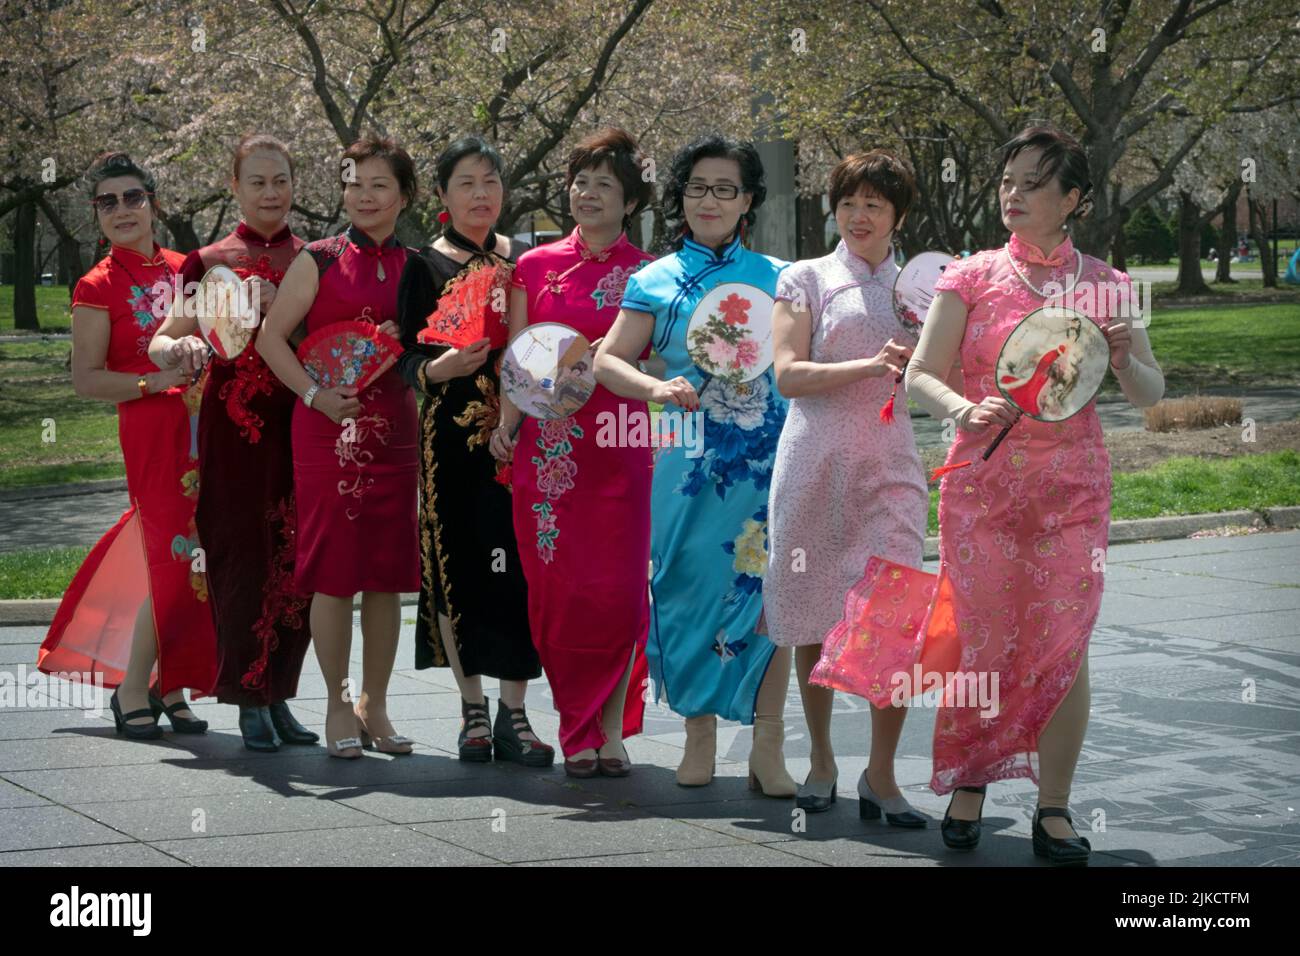 8 membres chinois américains d'un groupe de danse posent pour des photos tenant leurs fans. À Flushing Meadows Corona Park, Queens, New York. Banque D'Images